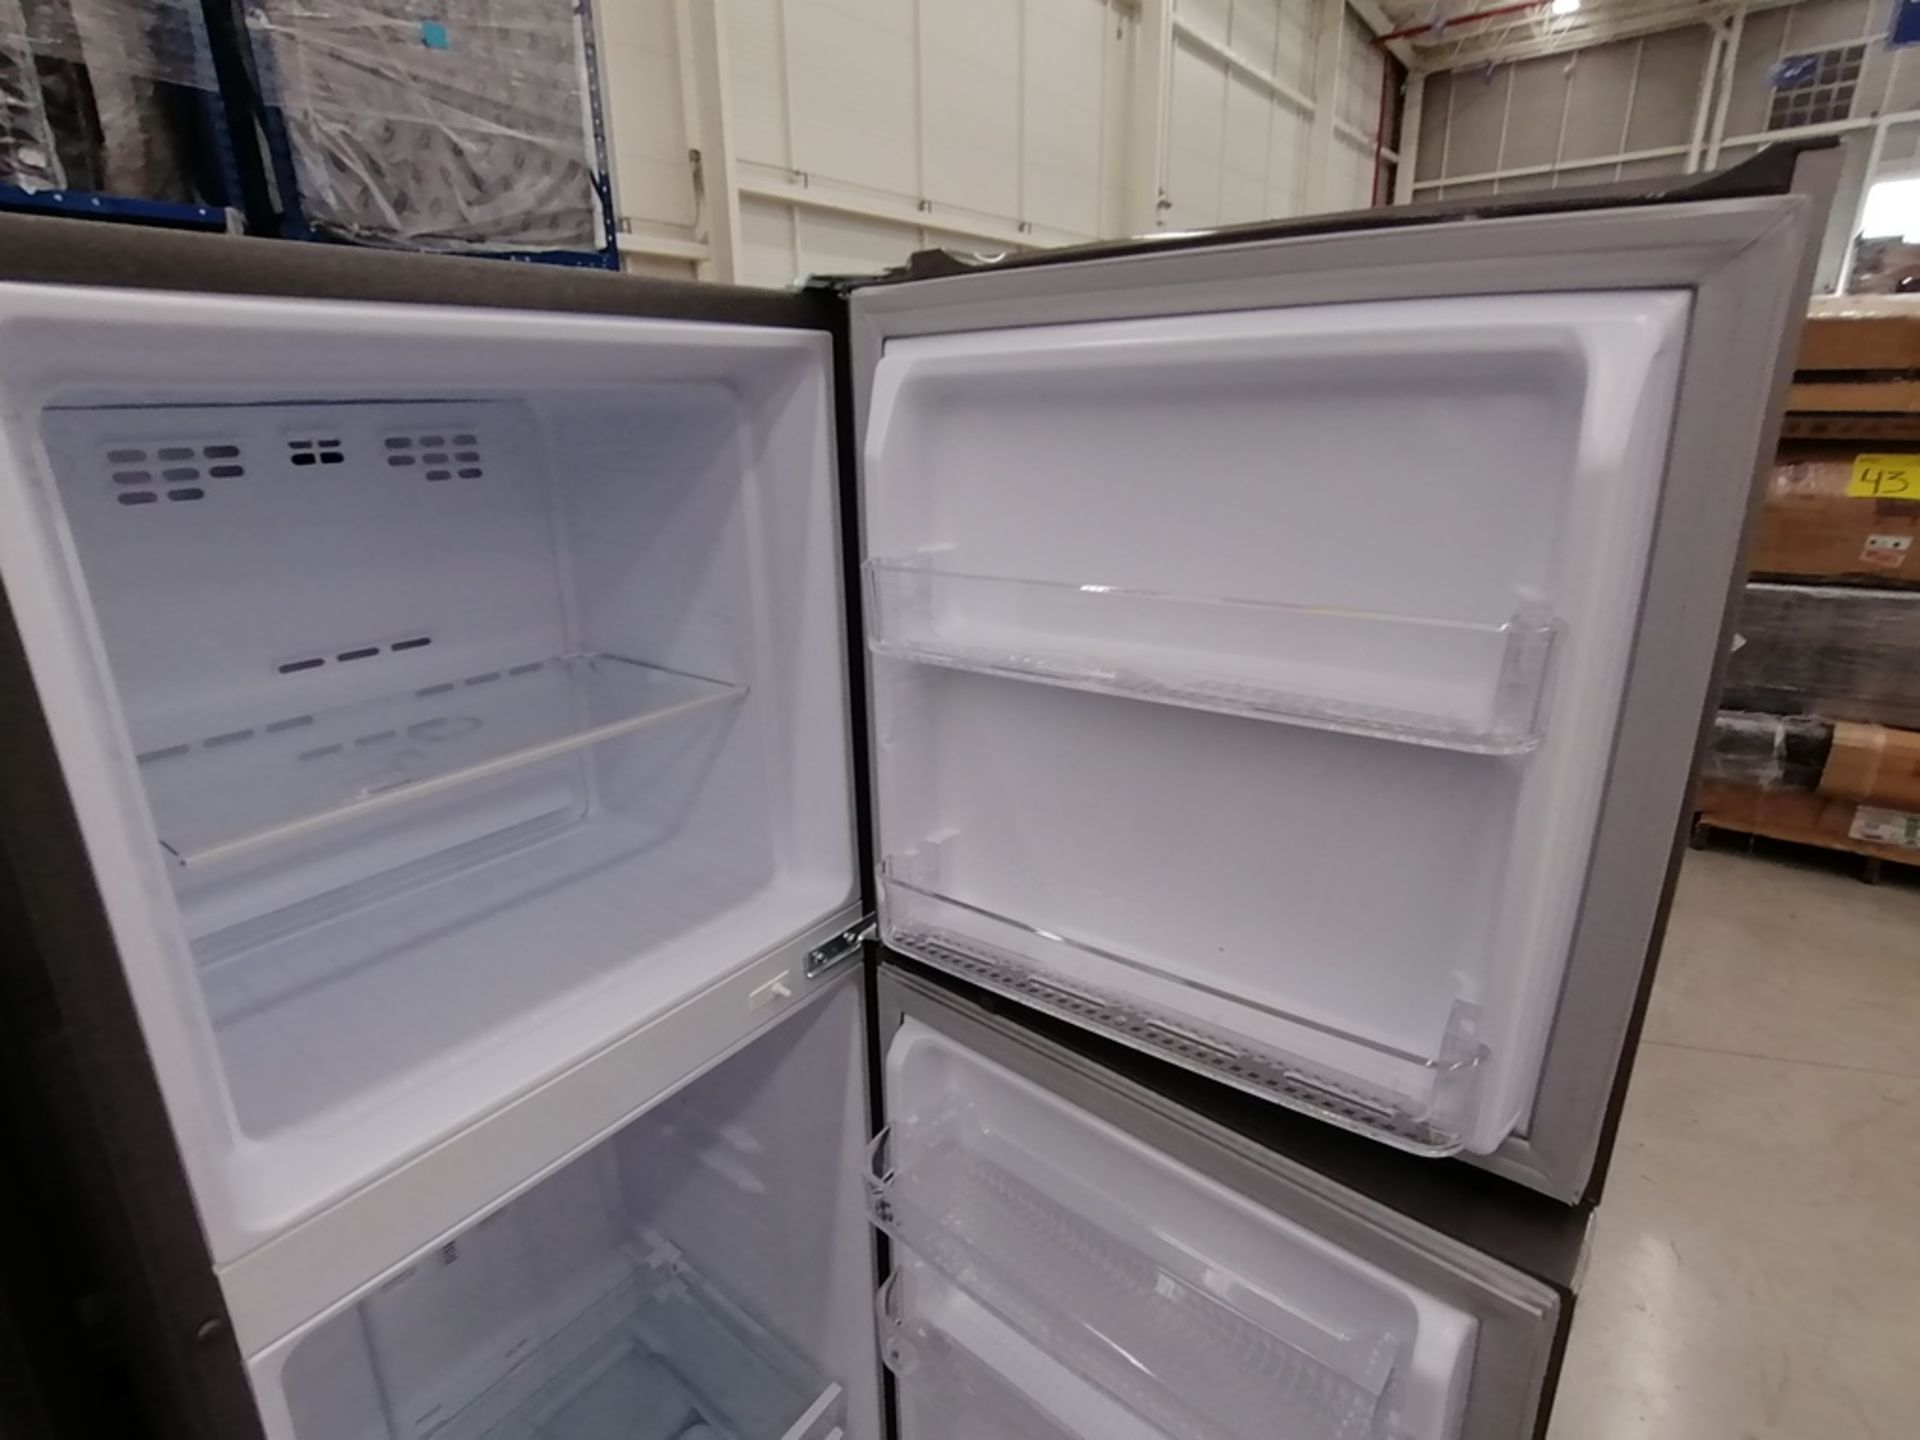 Lote de 2 refrigeradores incluye: 1 Refrigerador, Marca Mabe, Modelo RMA1025VNX, Serie 2110B623189, - Image 15 of 17